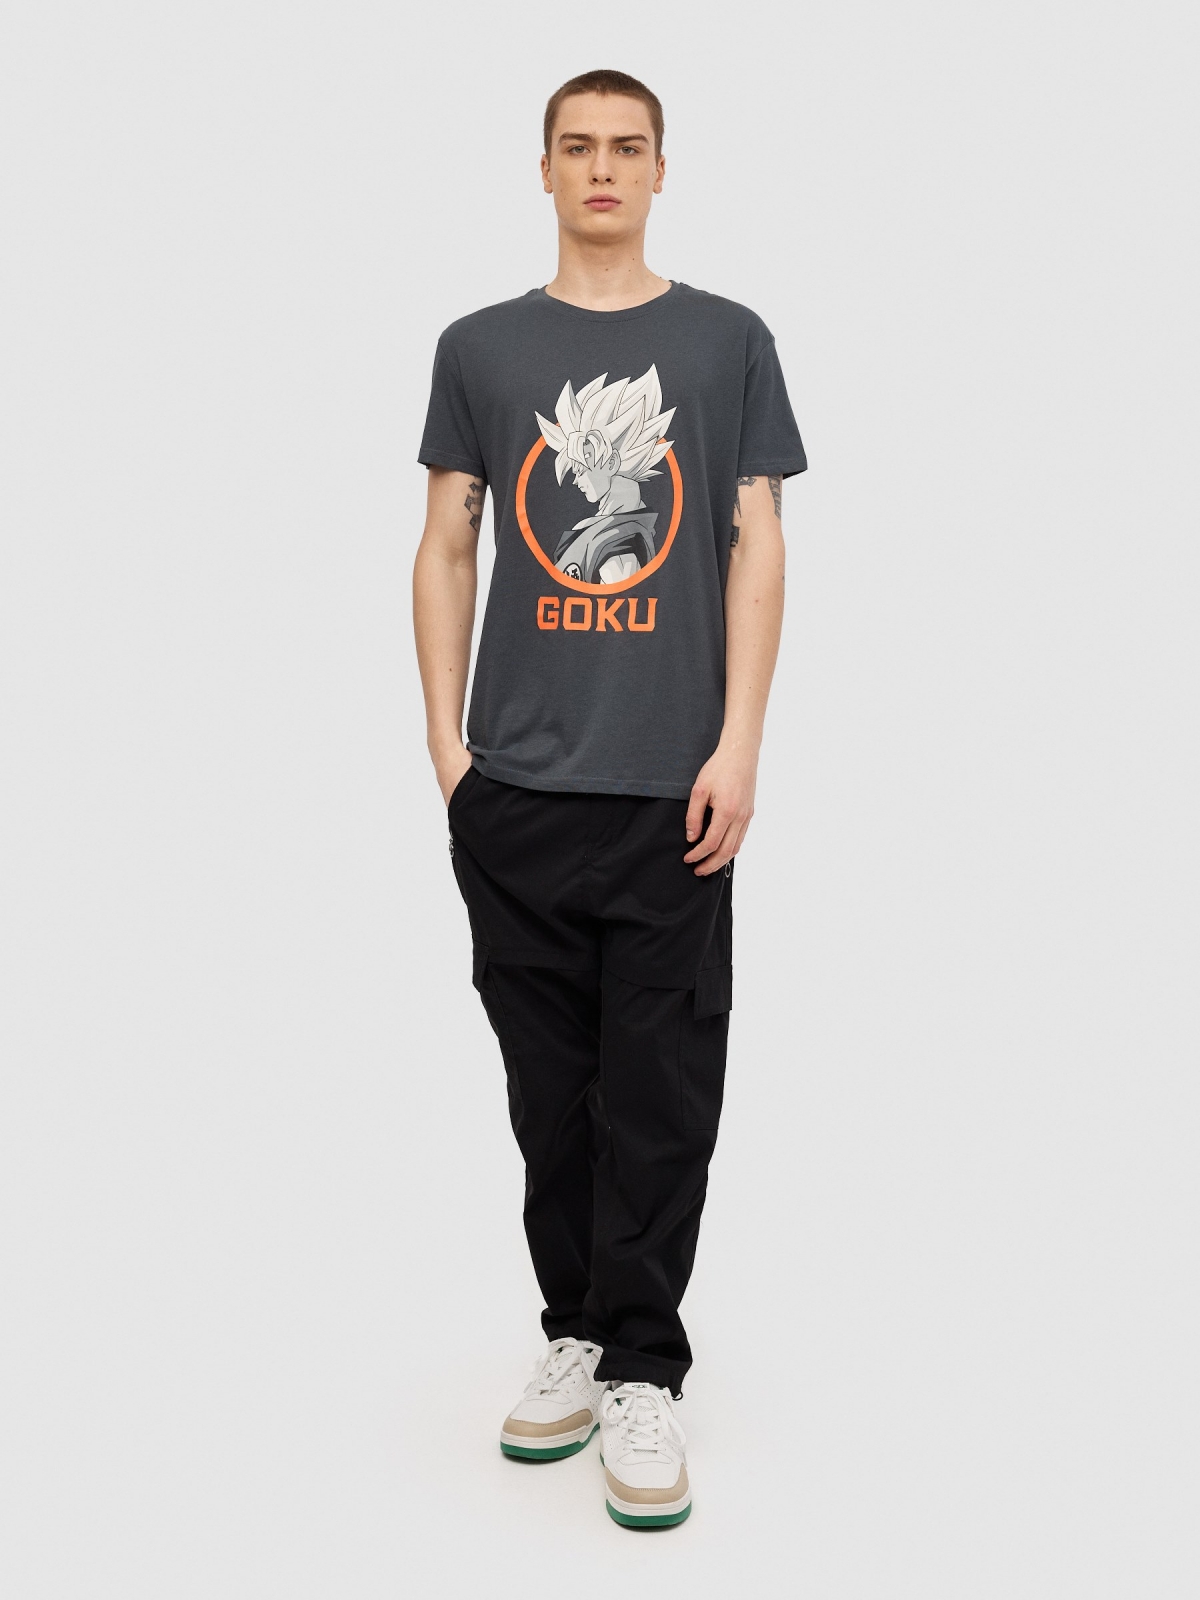 T-shirt de manga curta do Goku cinza escuro vista geral frontal